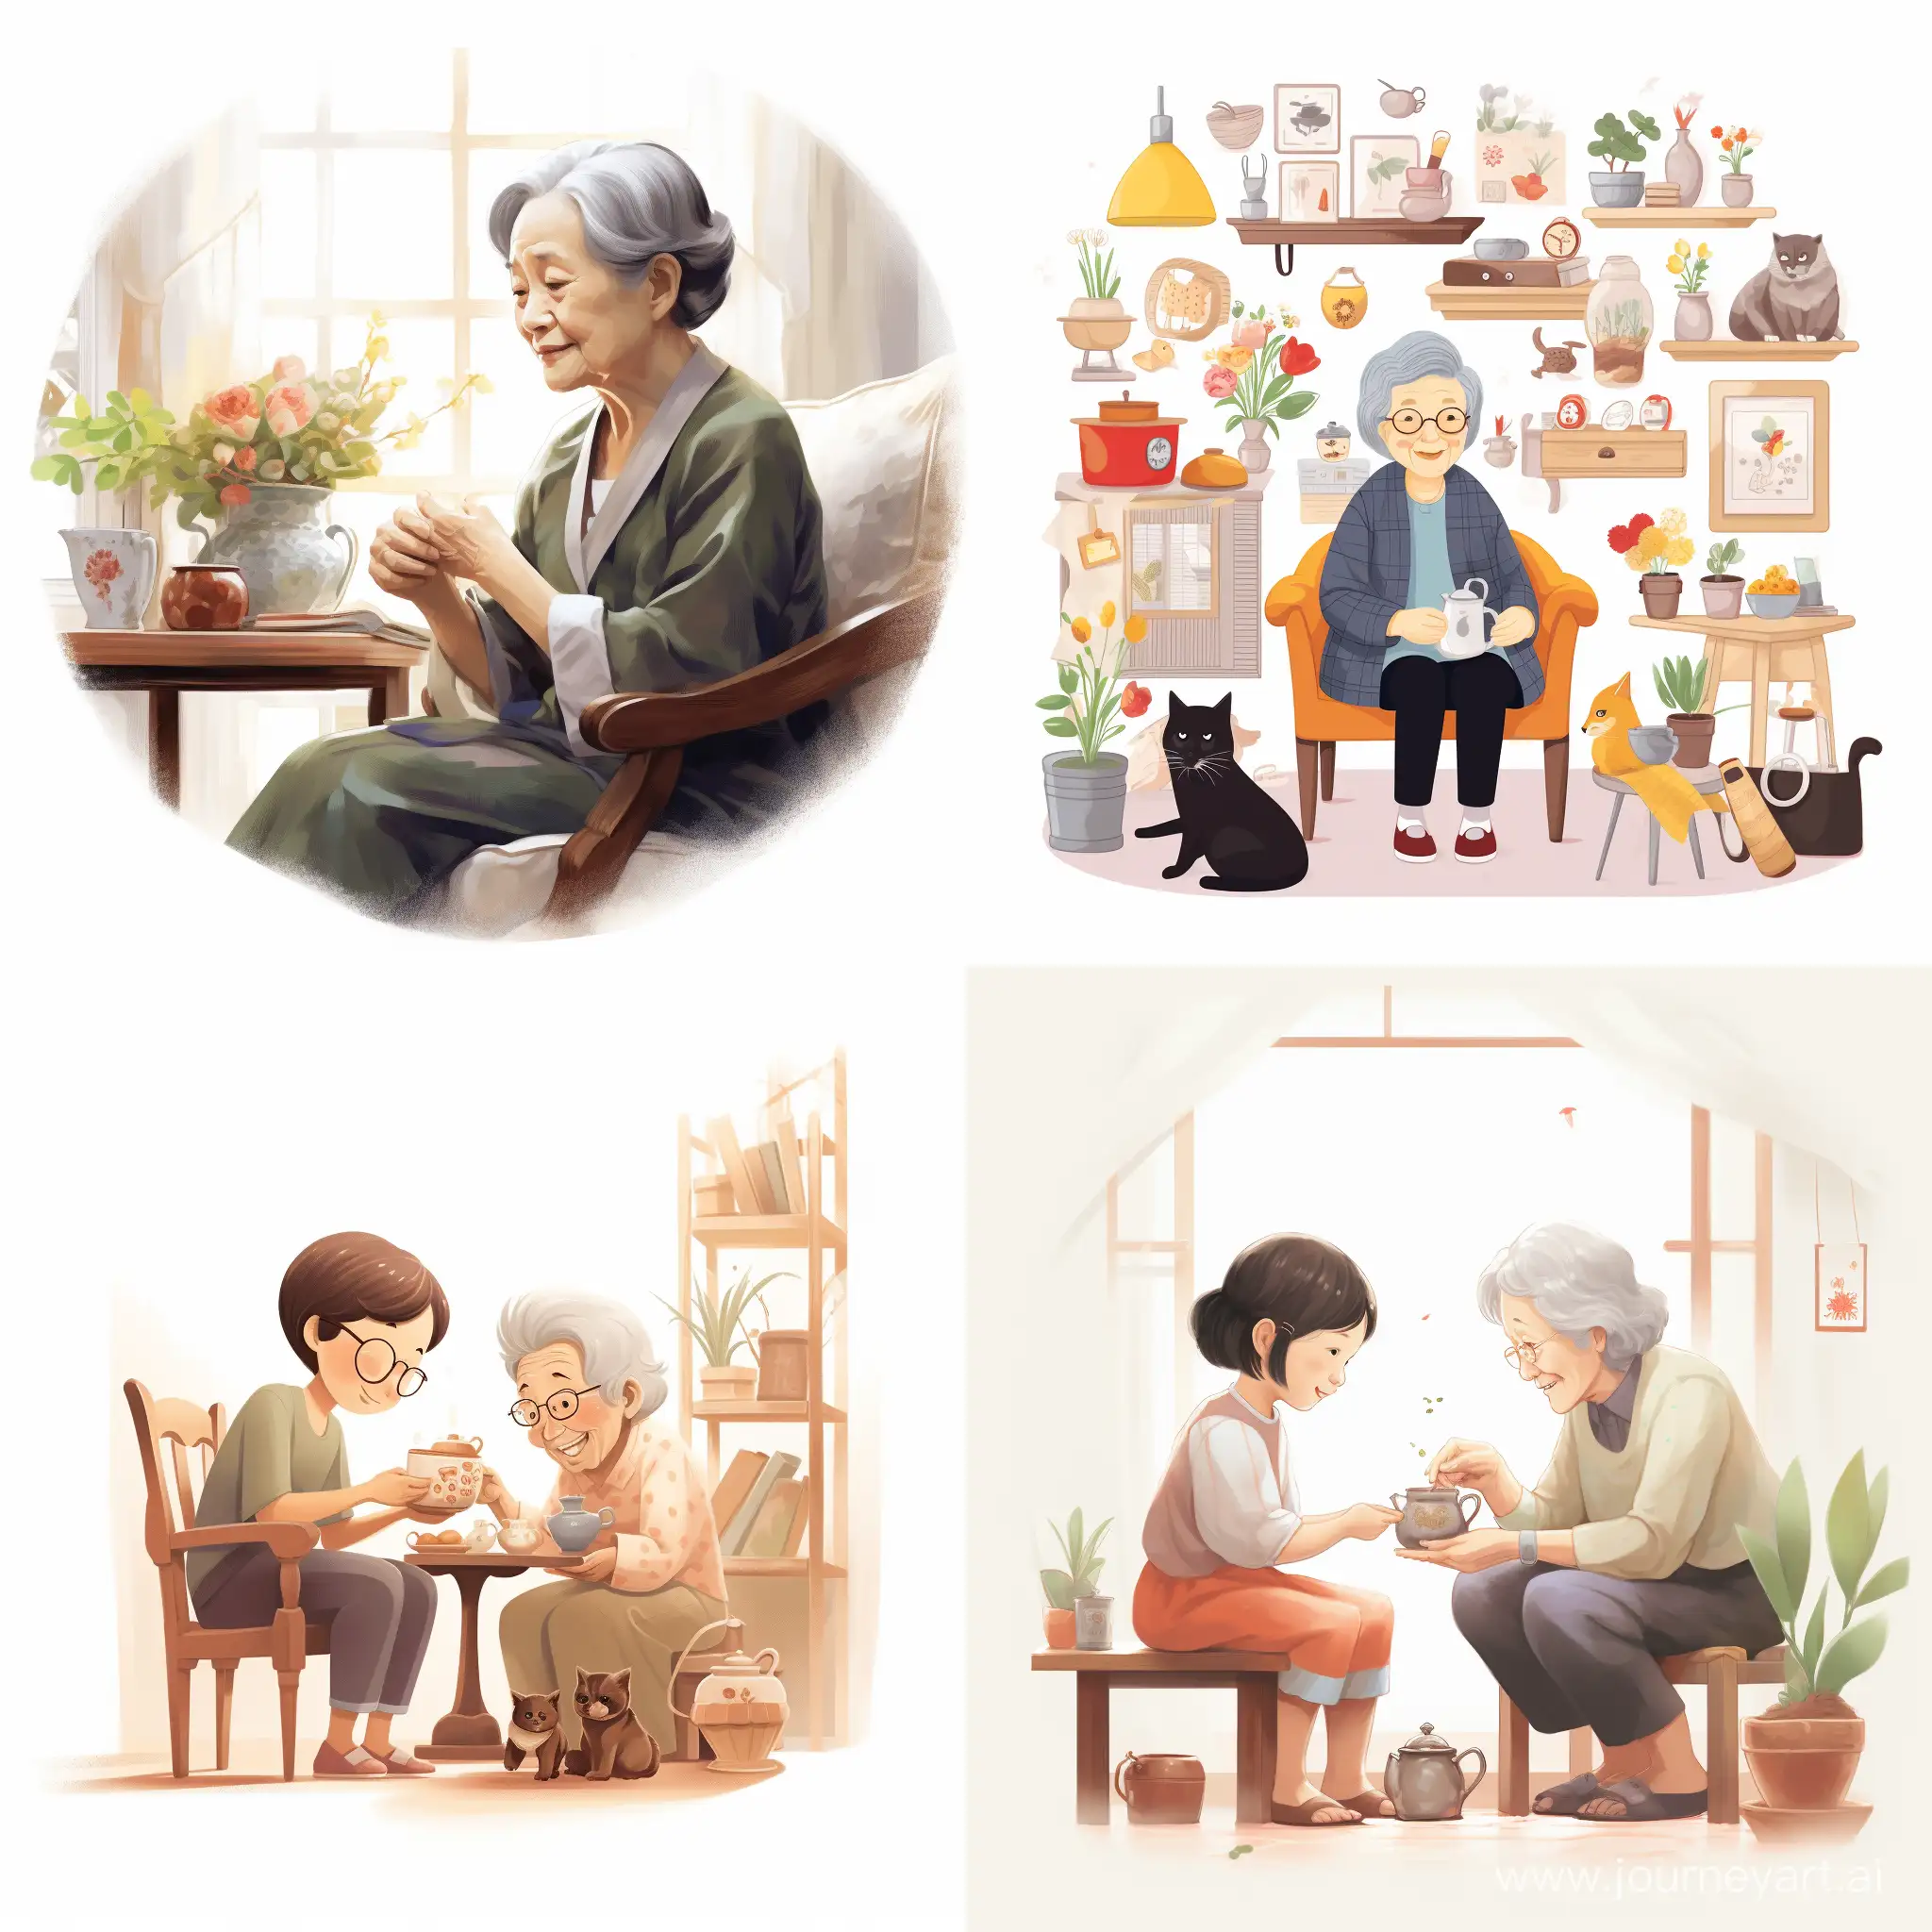 Main Design (主要設計) with a white background Illustrate 65 years old 奶奶 (Grandmother)
溫暖而慈祥的奶奶，總是教導小明做事的道理。



